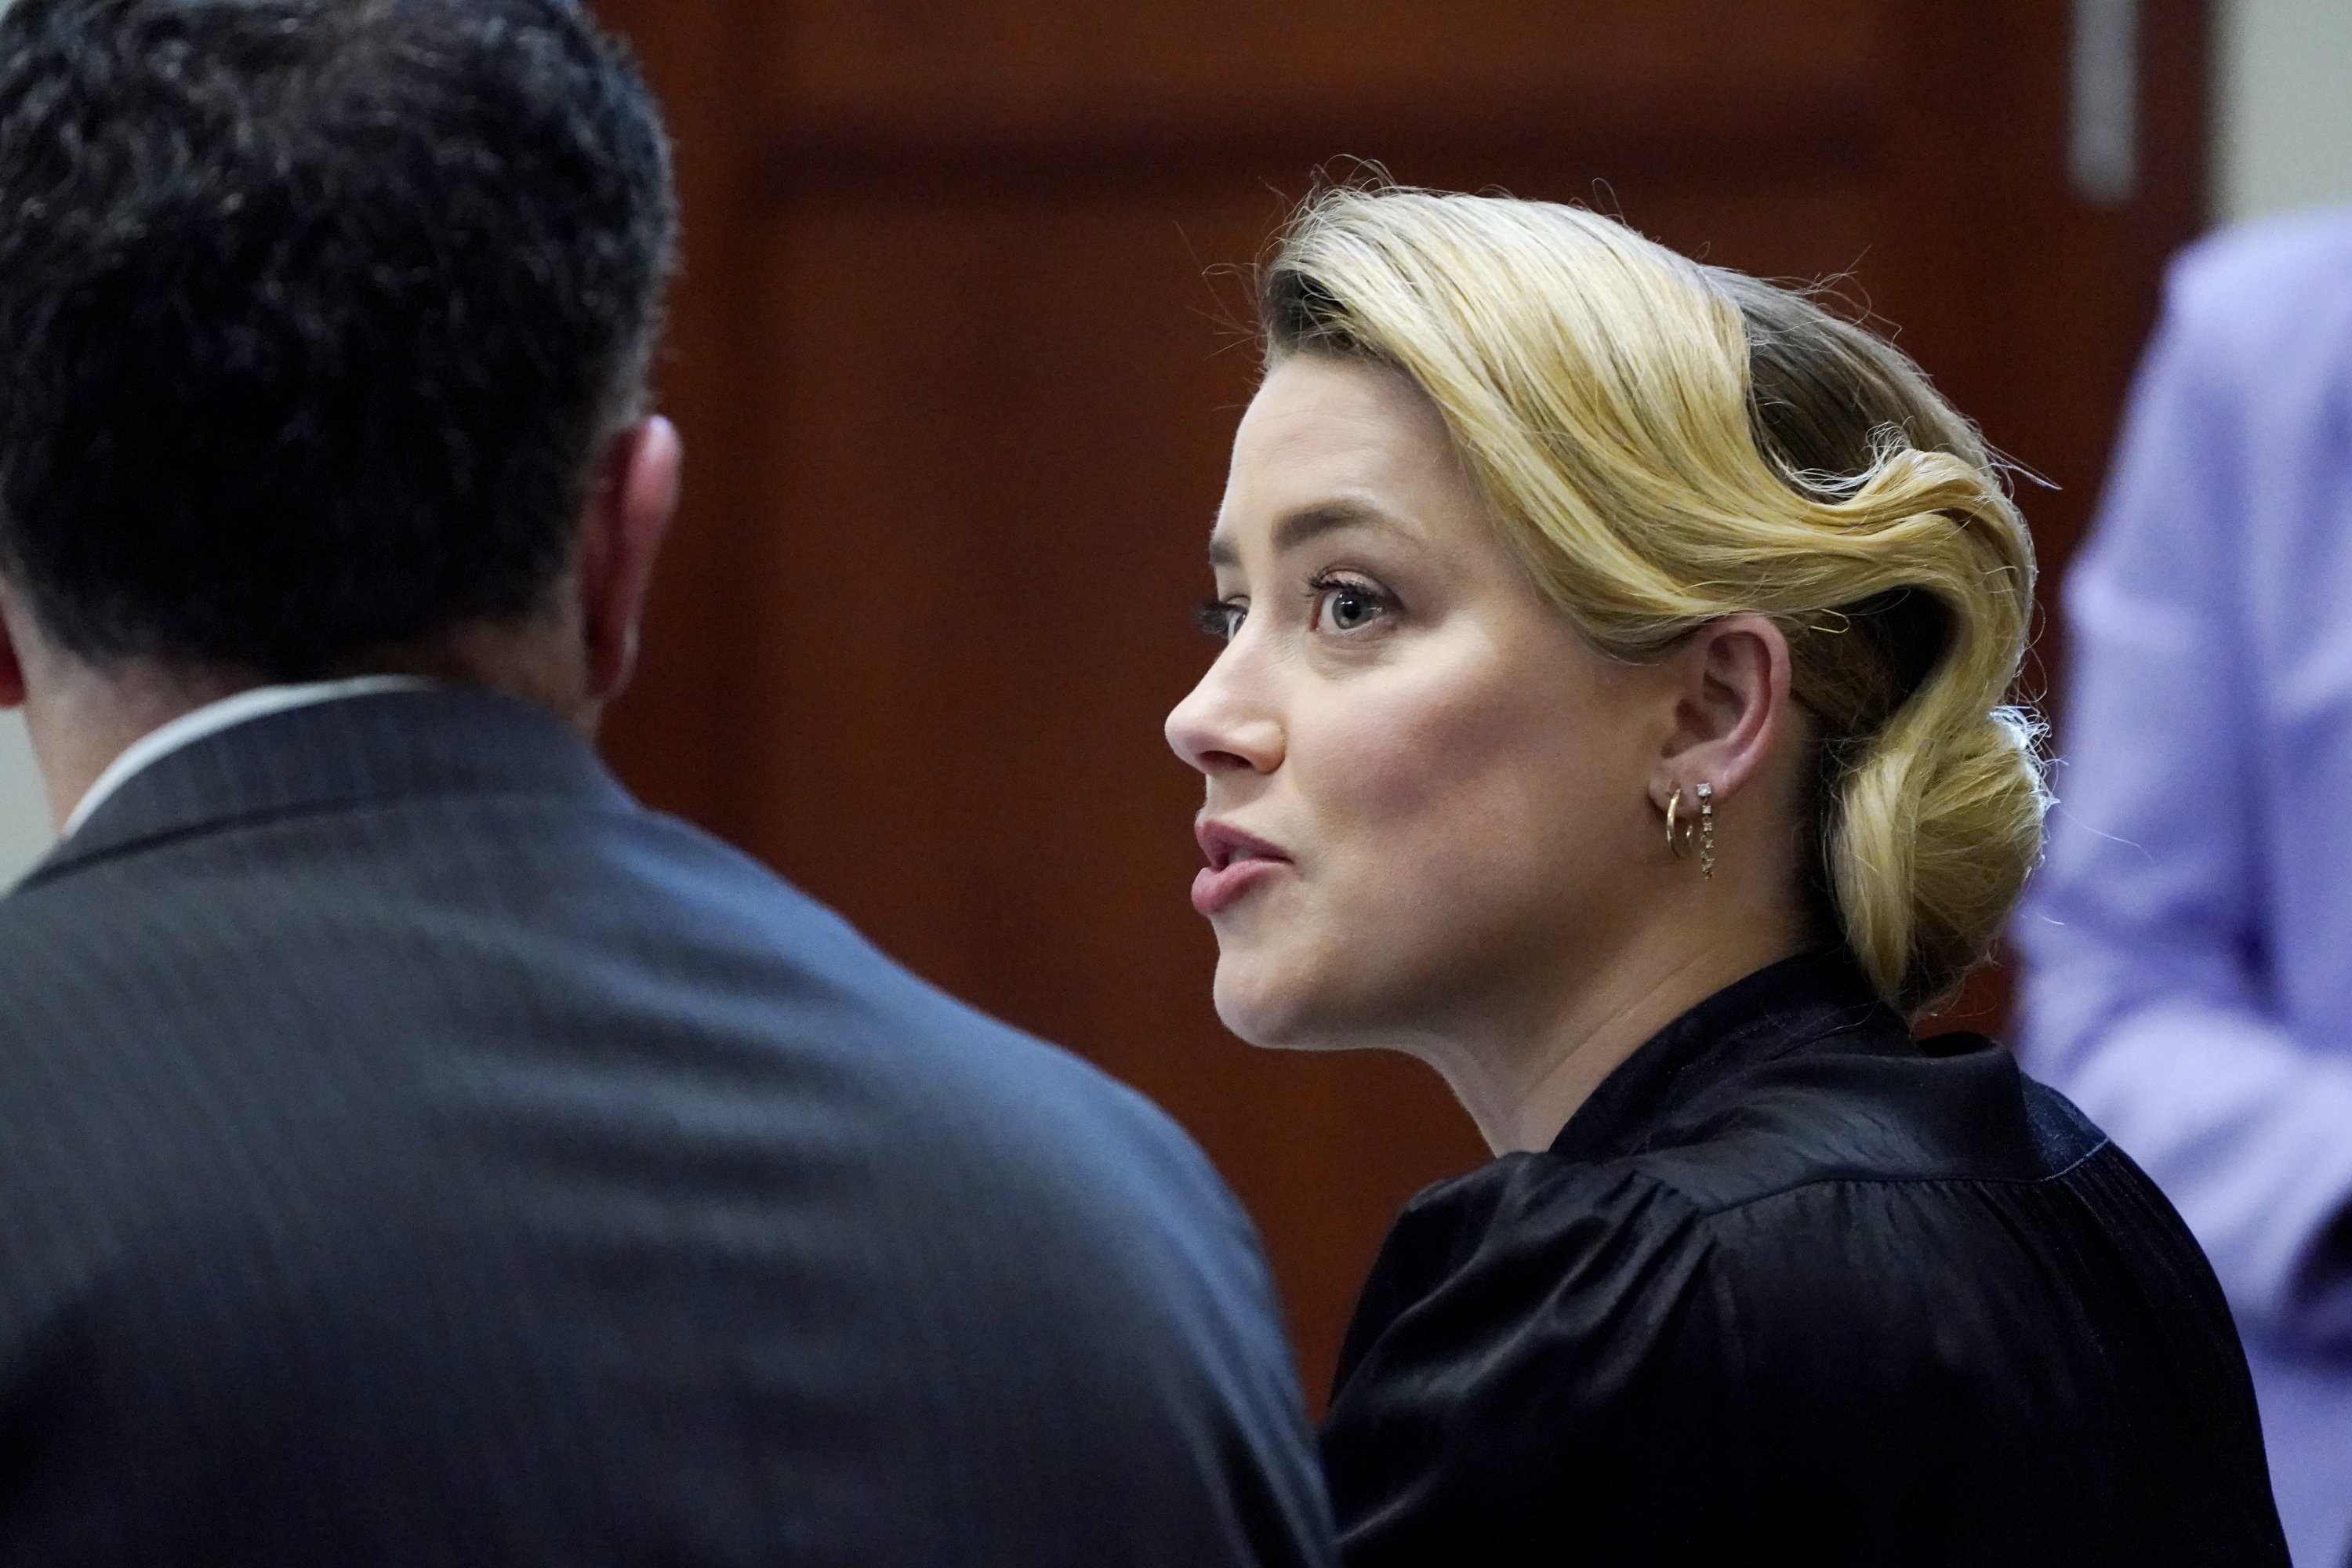 Aktris Amber Heard berbicara dengan pengacaranya di ruang sidang di Fairfax County Circuit Courthouse di Fairfax, Va., Senin, 25 April 2022. (AP)